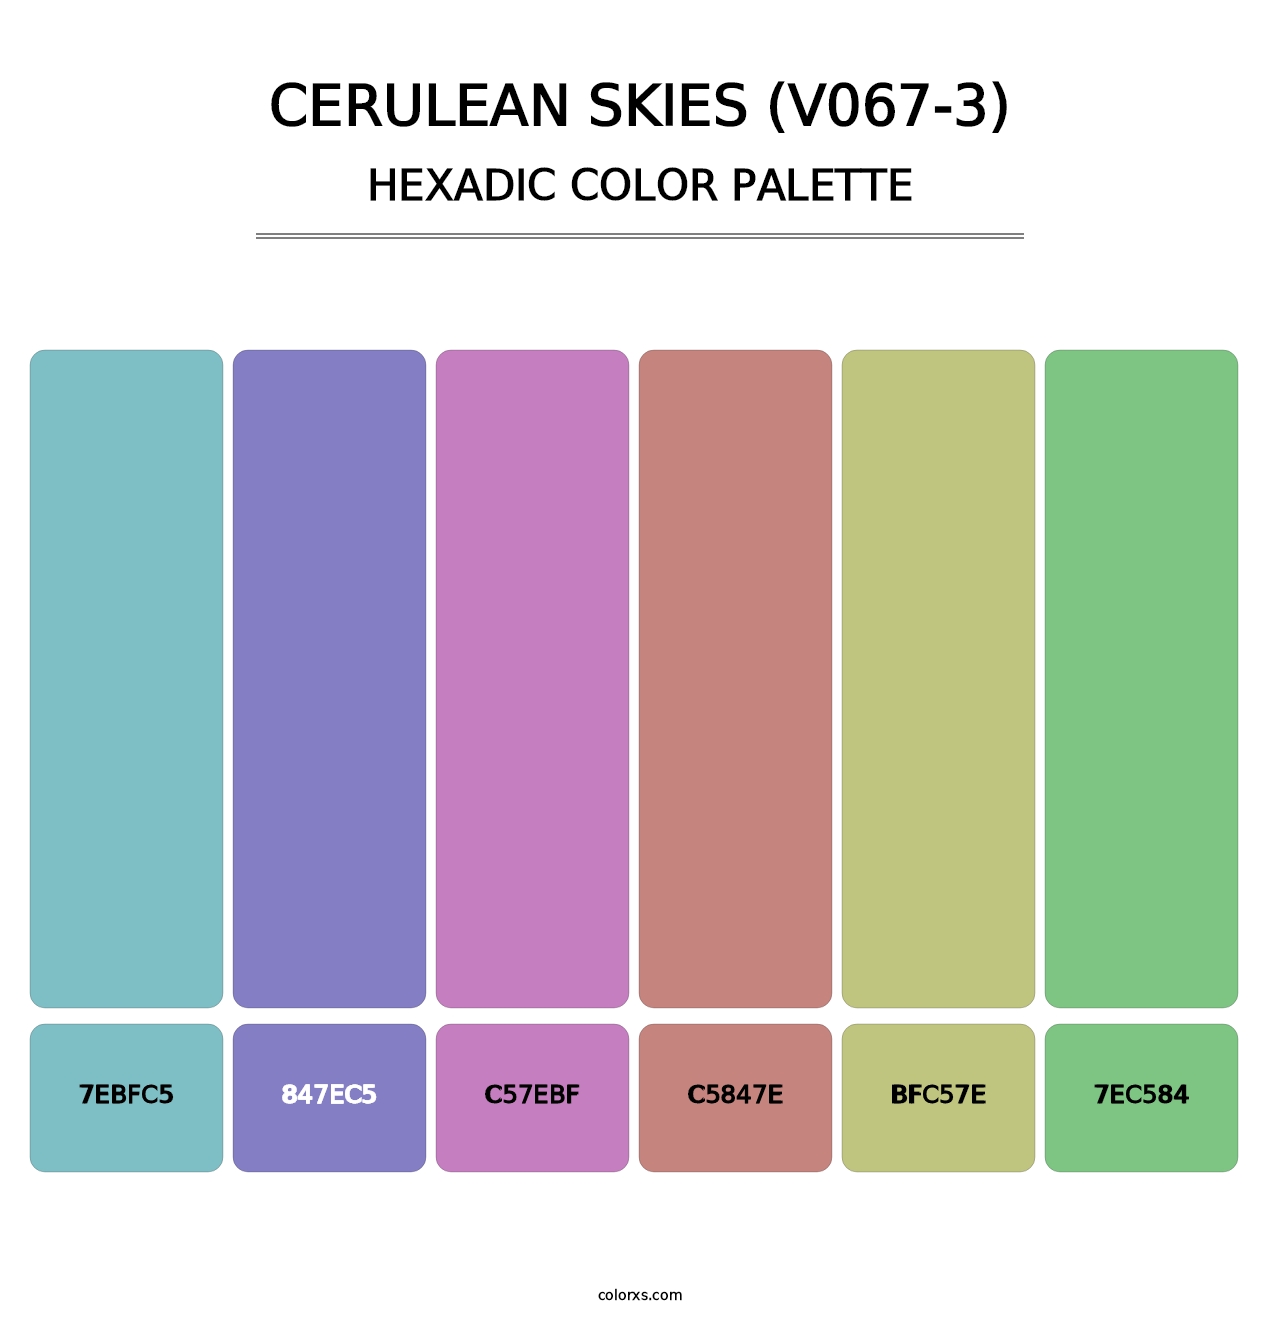 Cerulean Skies (V067-3) - Hexadic Color Palette